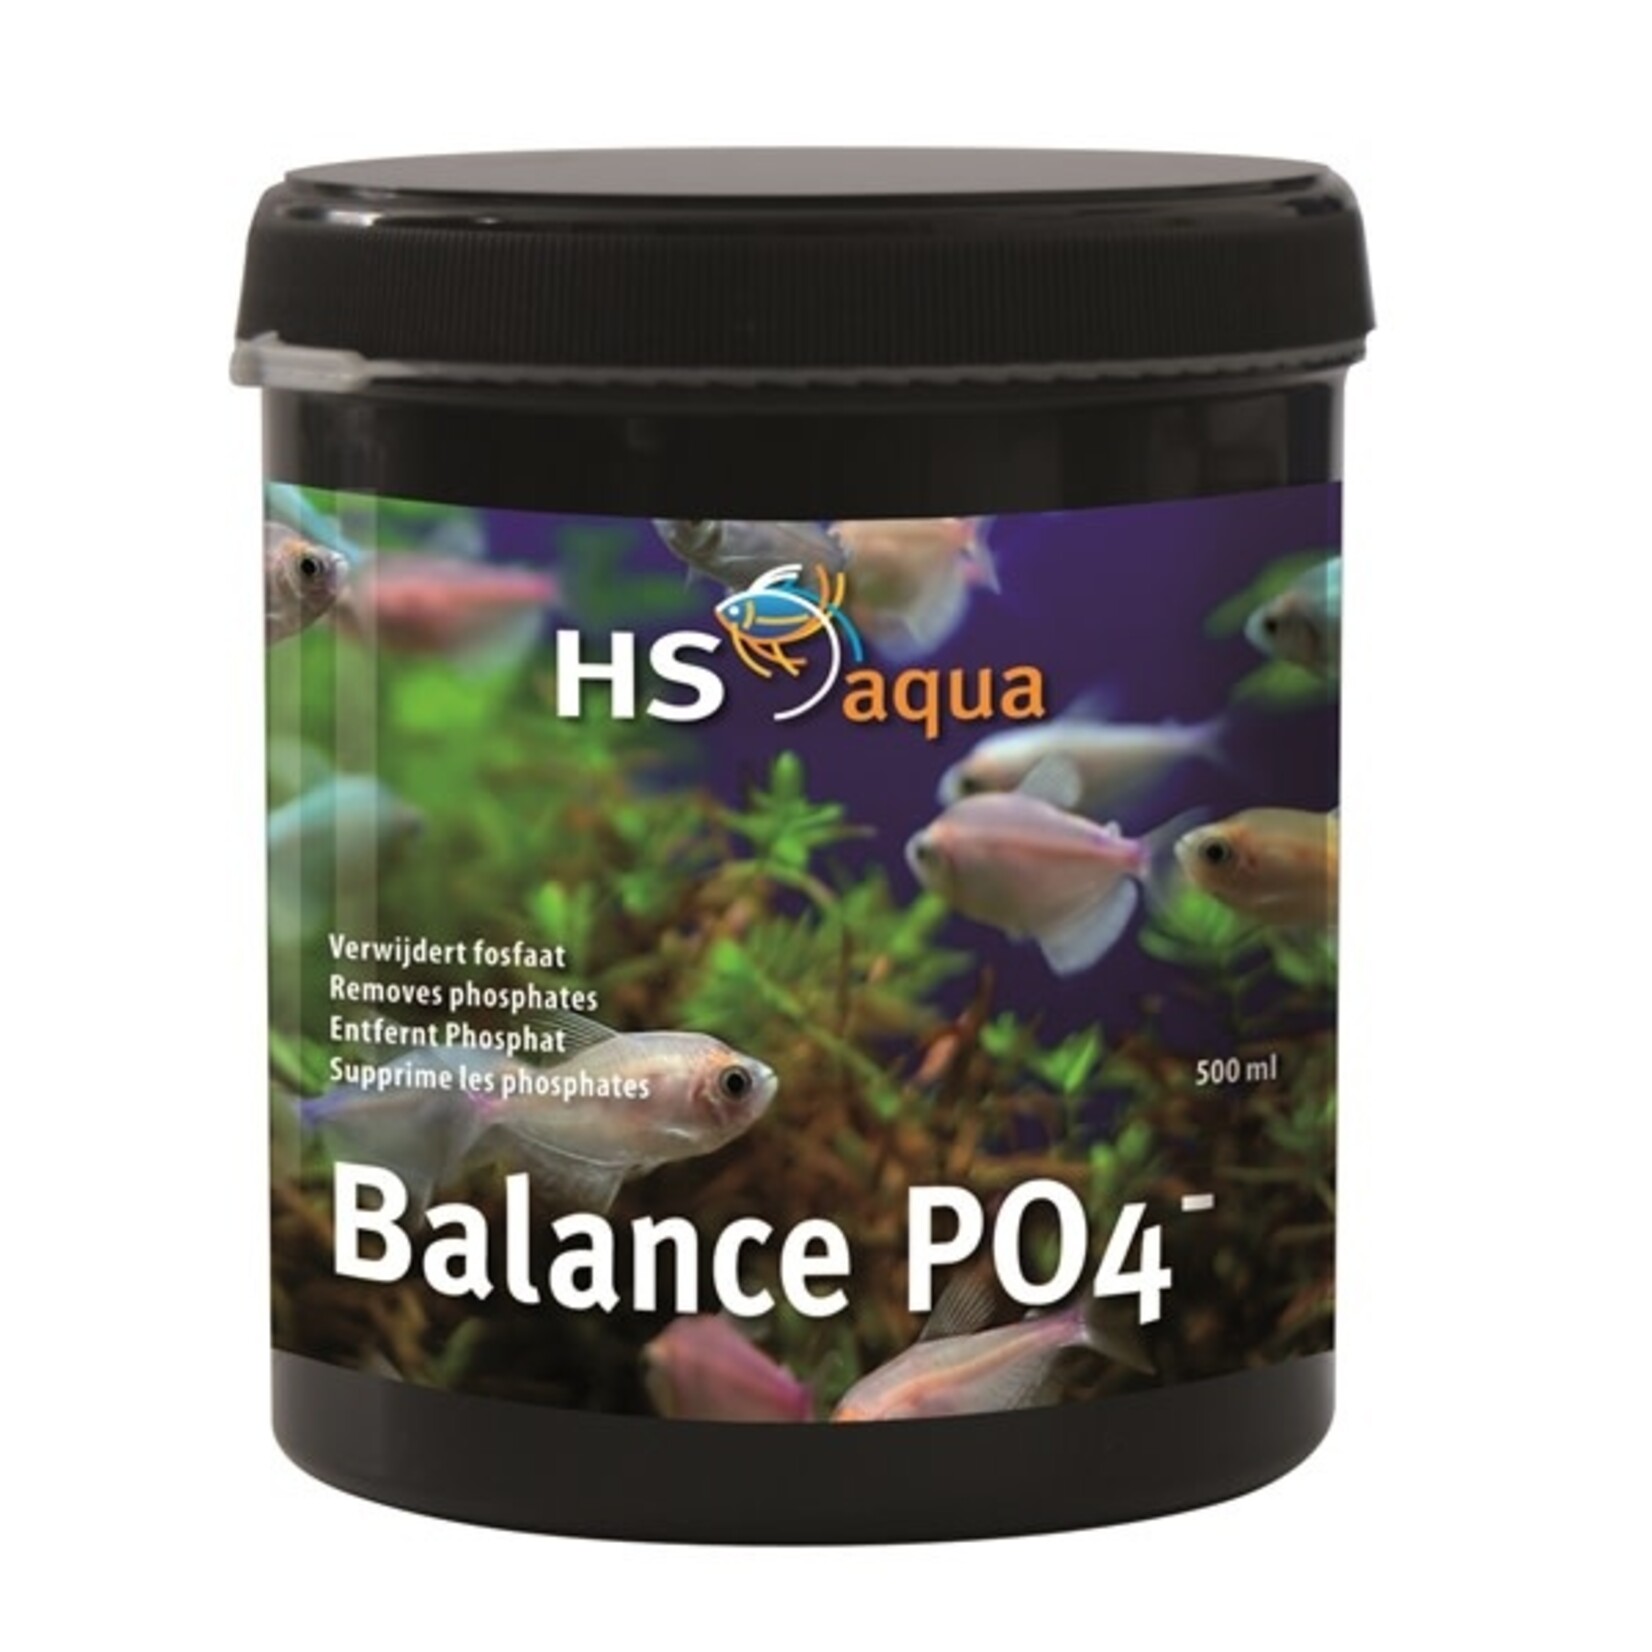 HS Aqua Balance po4 minus 500 ml